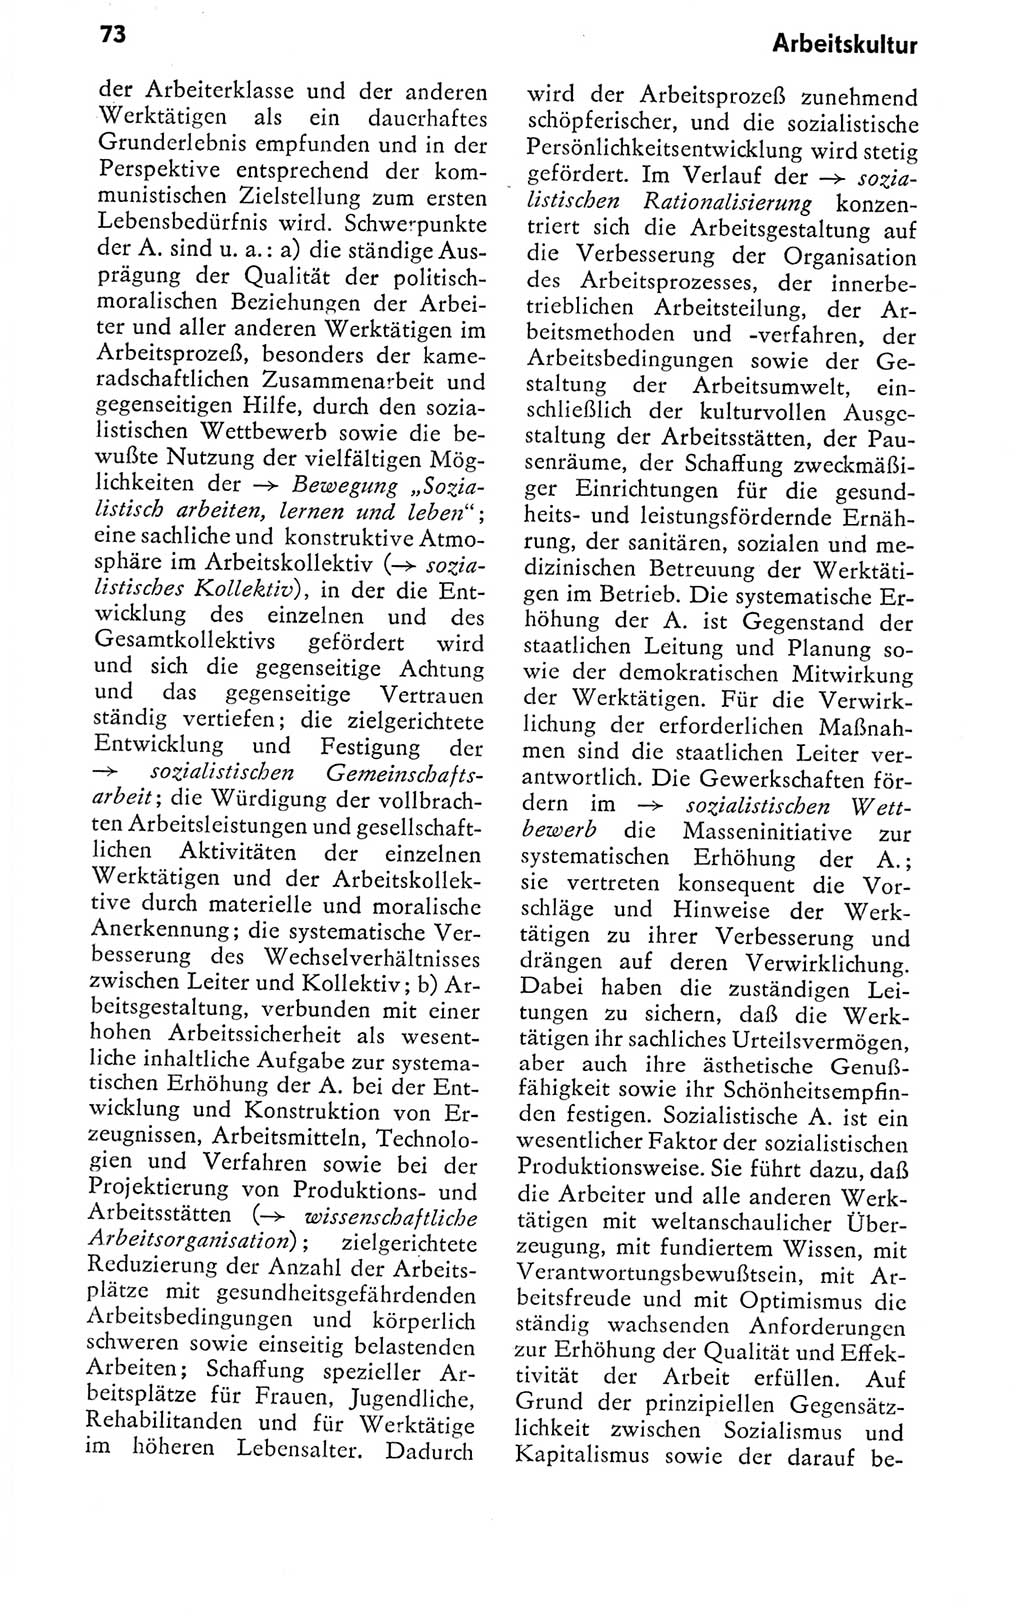 Kleines politisches Wörterbuch [Deutsche Demokratische Republik (DDR)] 1978, Seite 73 (Kl. pol. Wb. DDR 1978, S. 73)